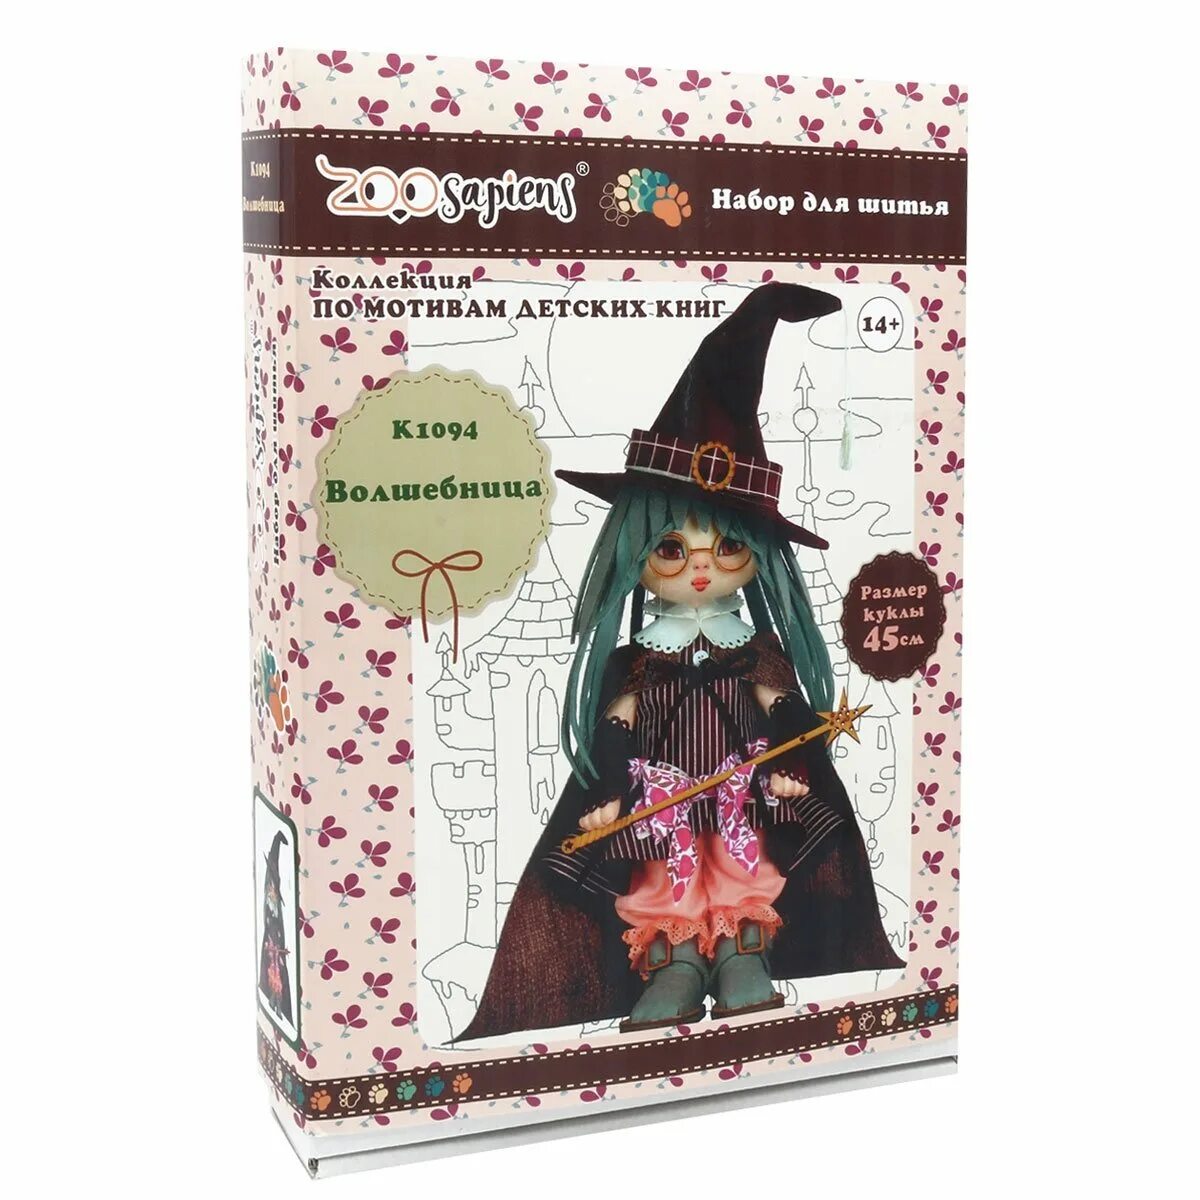 Кукла нова купить. Набор для шитья волшебница к1094. Набор для изготовления каркасной текстильной куклы Nova Sloboda.